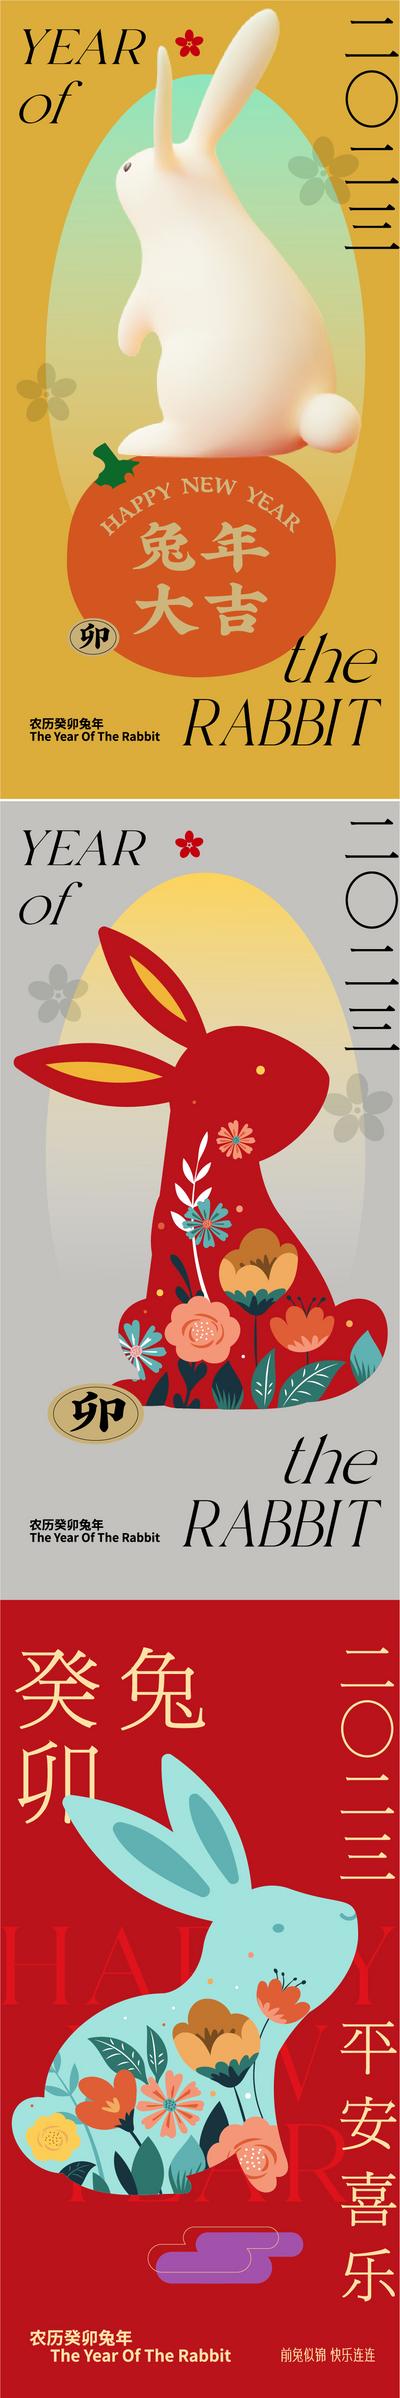 南门网 海报 中国传统节日 新年 兔年 狂欢 跨年 兔子 插画 中式